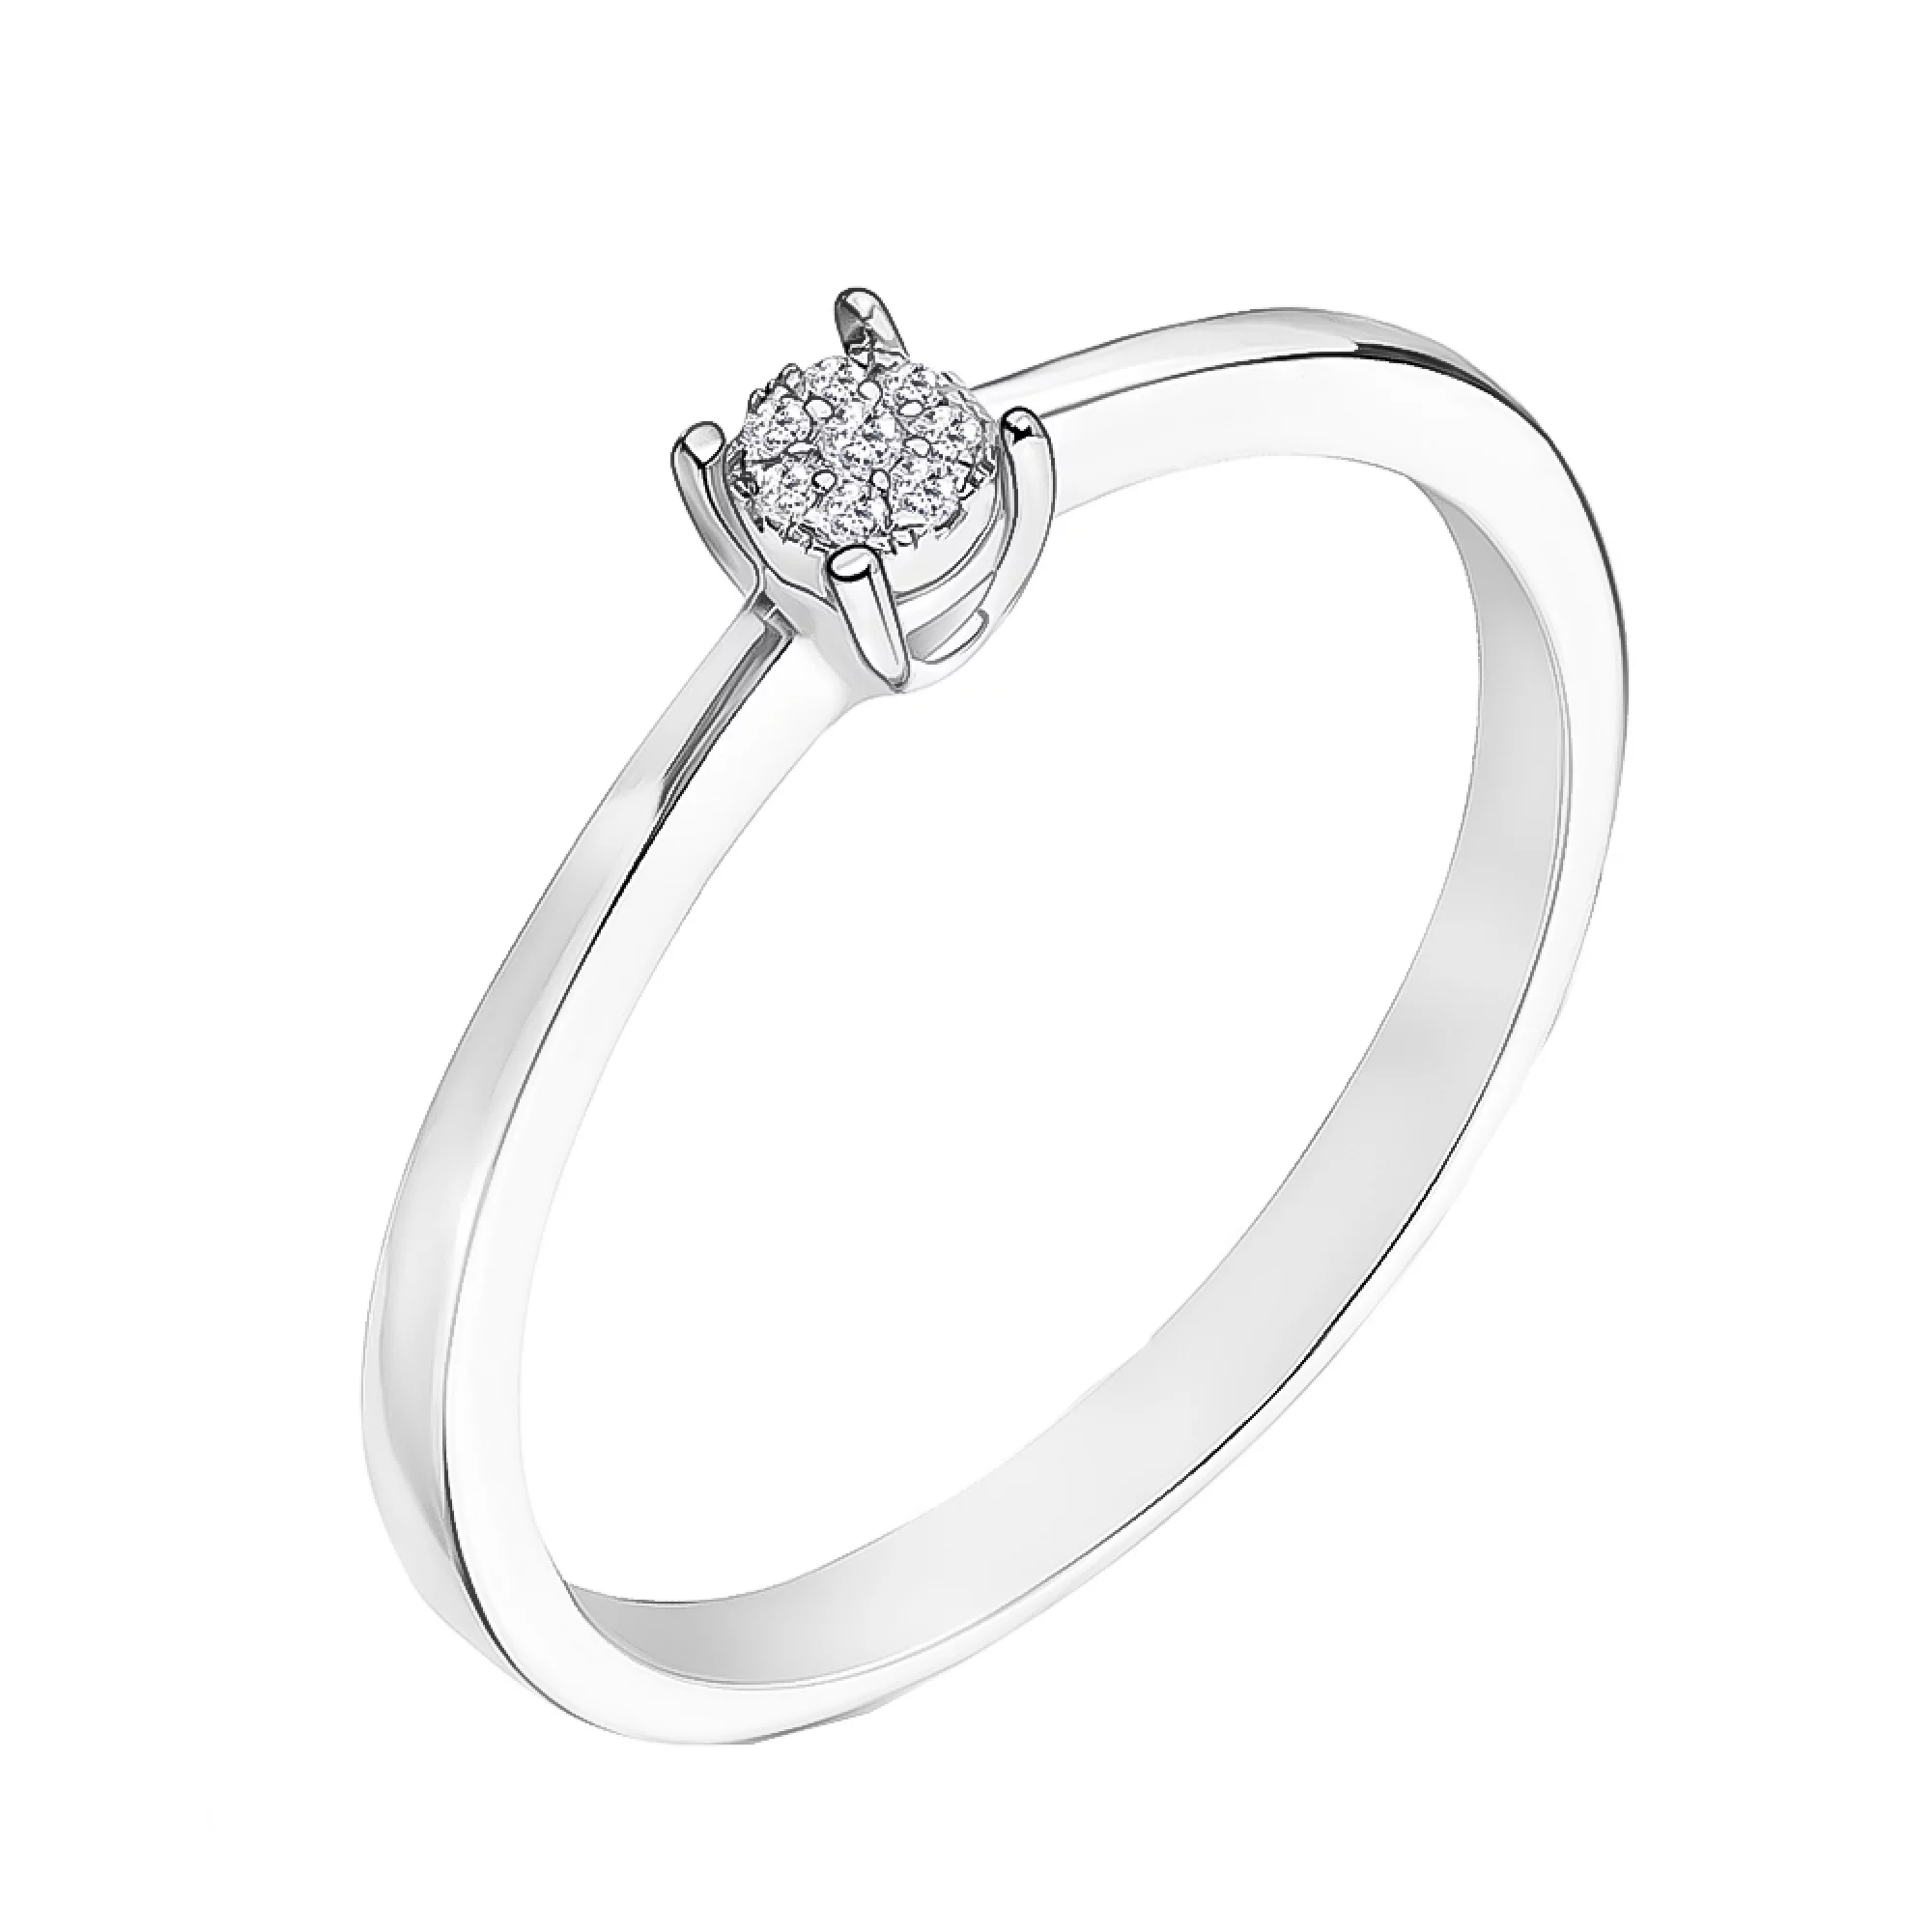 Кольцо в белом золоте для помолвки с бриллиантами - 1704141 – изображение 1